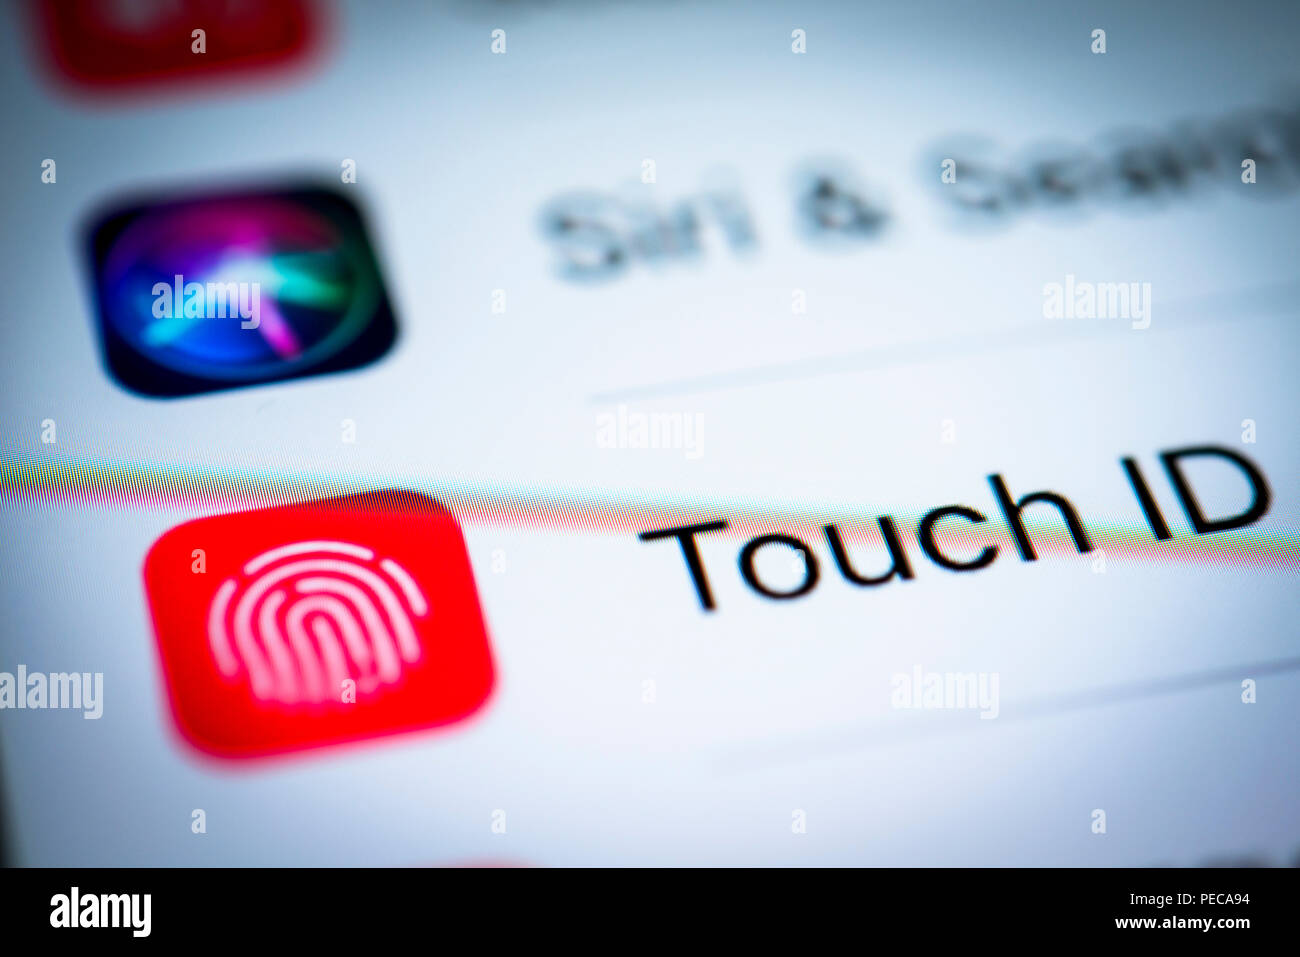 Touch ID Paramètres affichés sur un iPhone, iOS, smartphone, écran, close-up, détail, Allemagne Banque D'Images